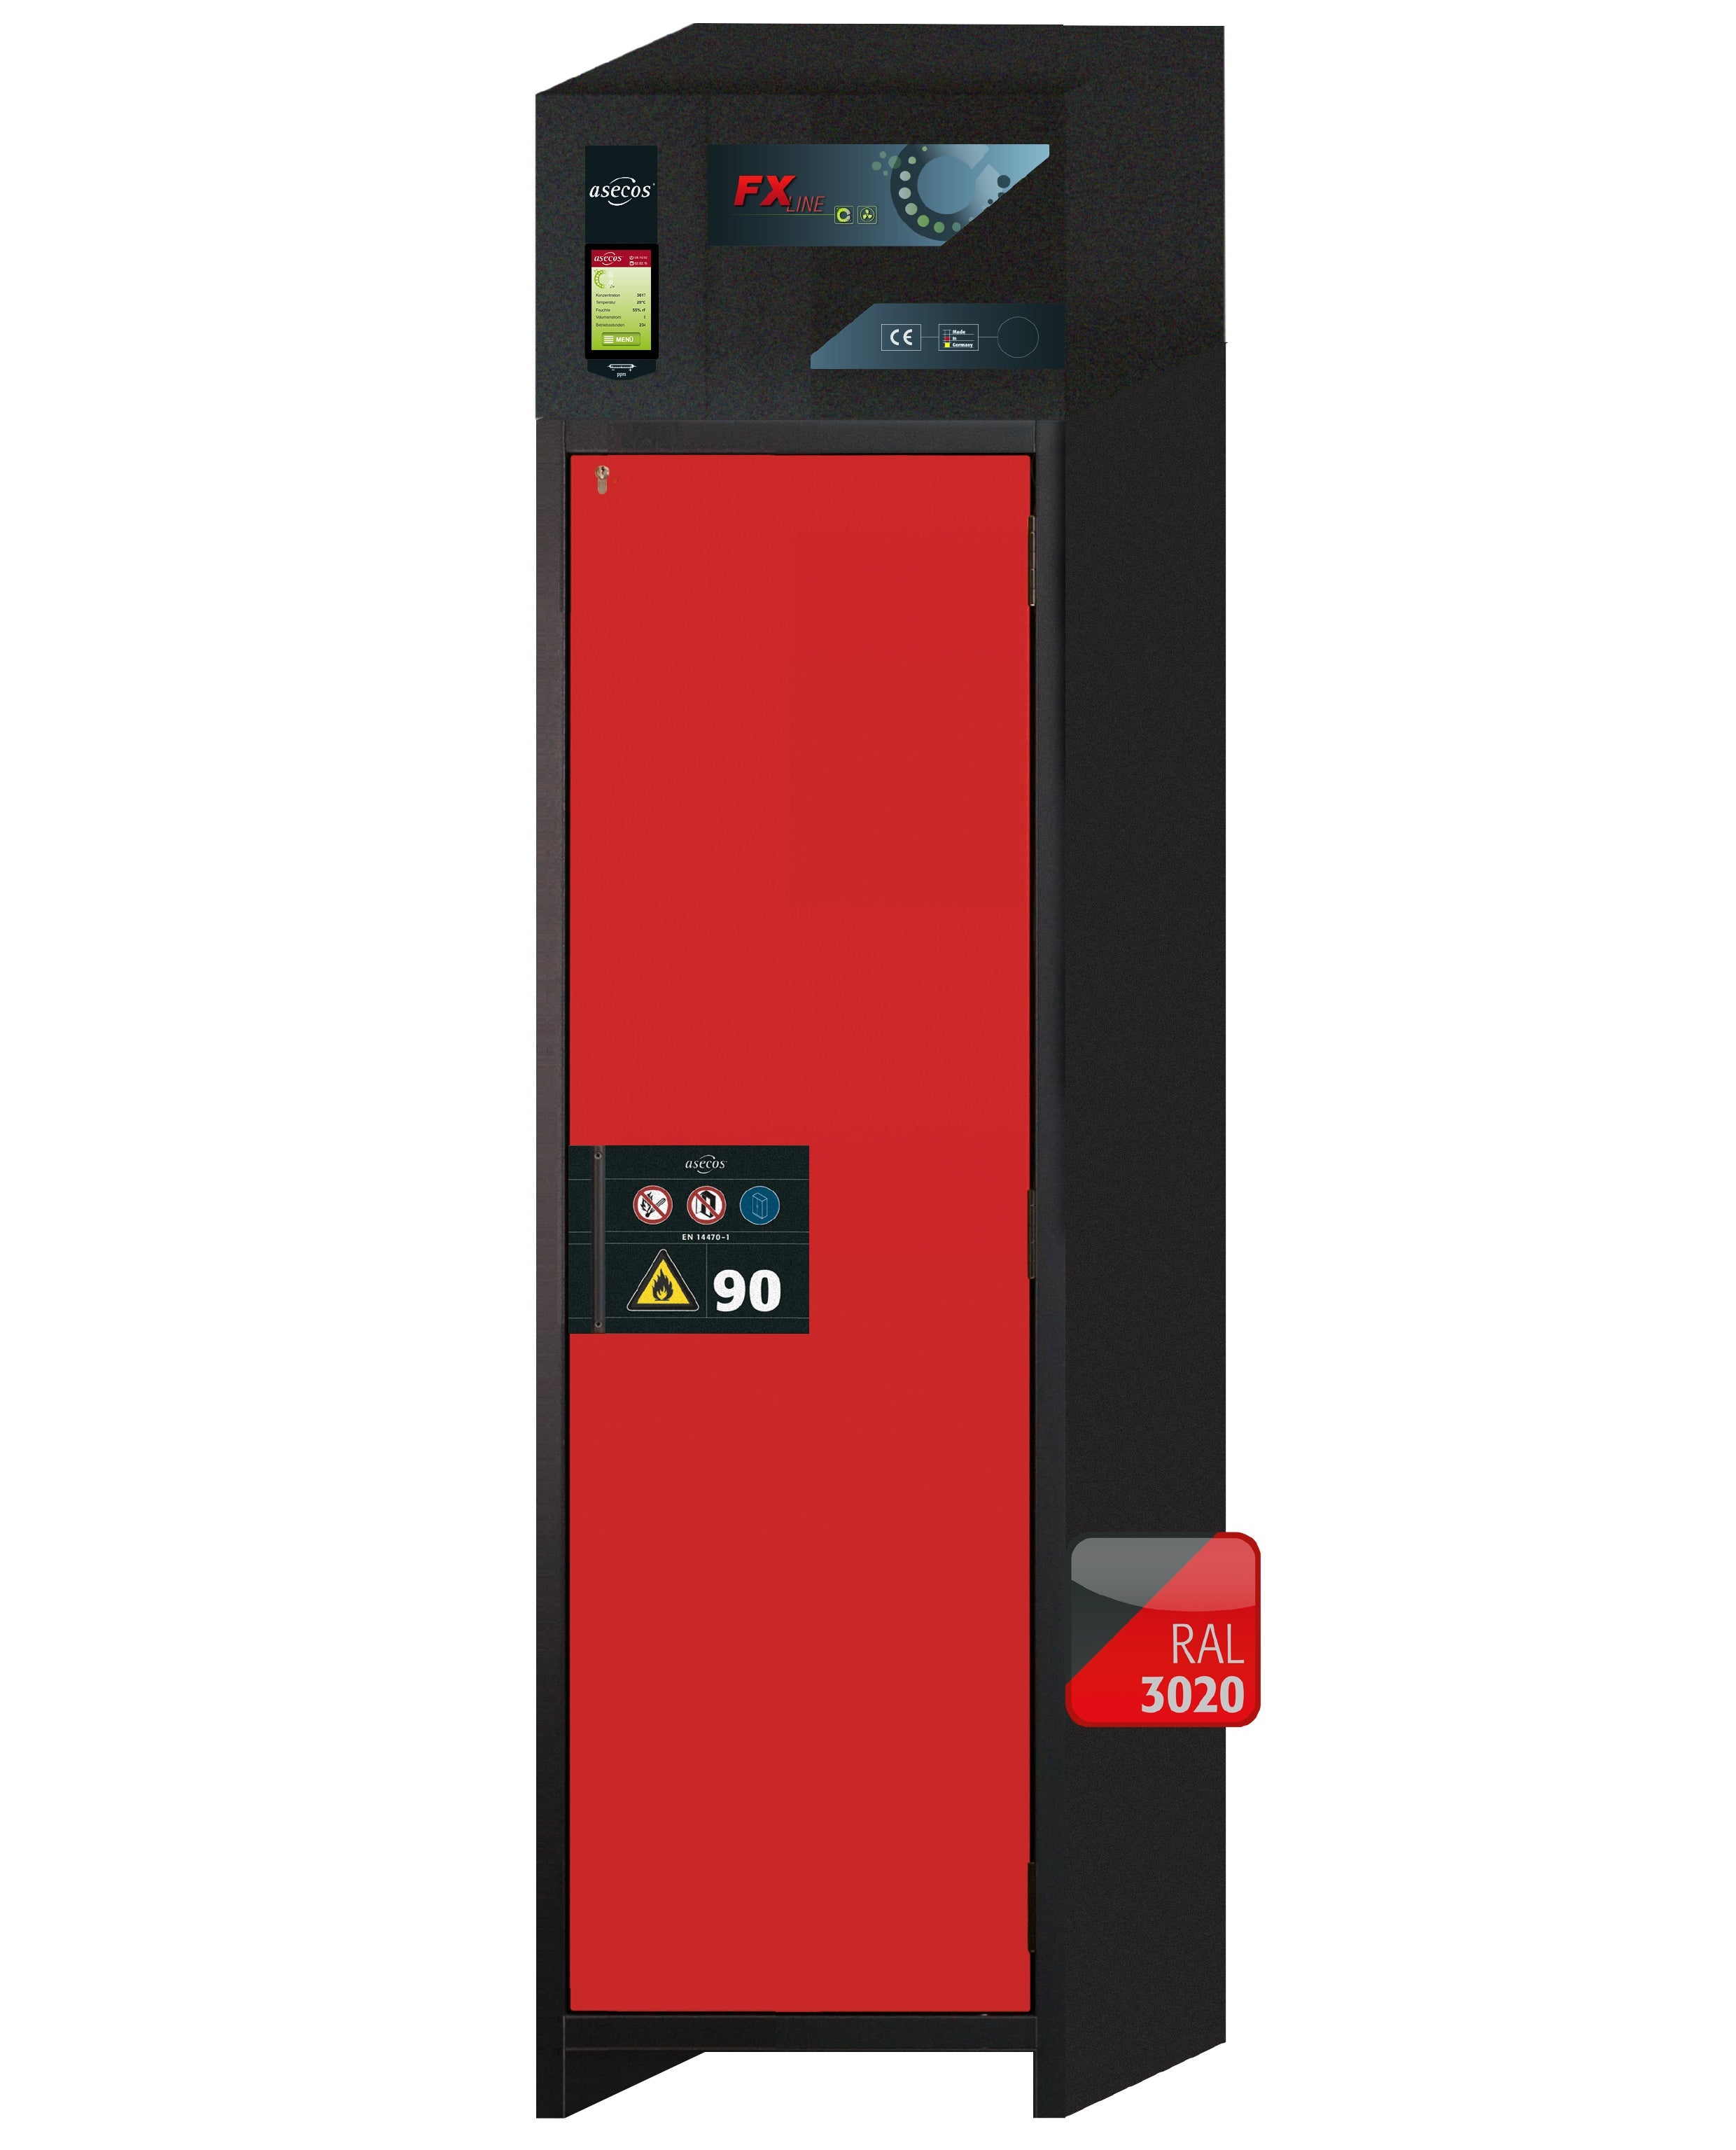 Armoire de filtration d'air recyclé type 90 FX-PEGASUS-90 modèle FX90.229.060.WDACR en rouge signalisation RAL 3020 avec 5x plateaux coulissants standard (acier inoxydable 1.4301)